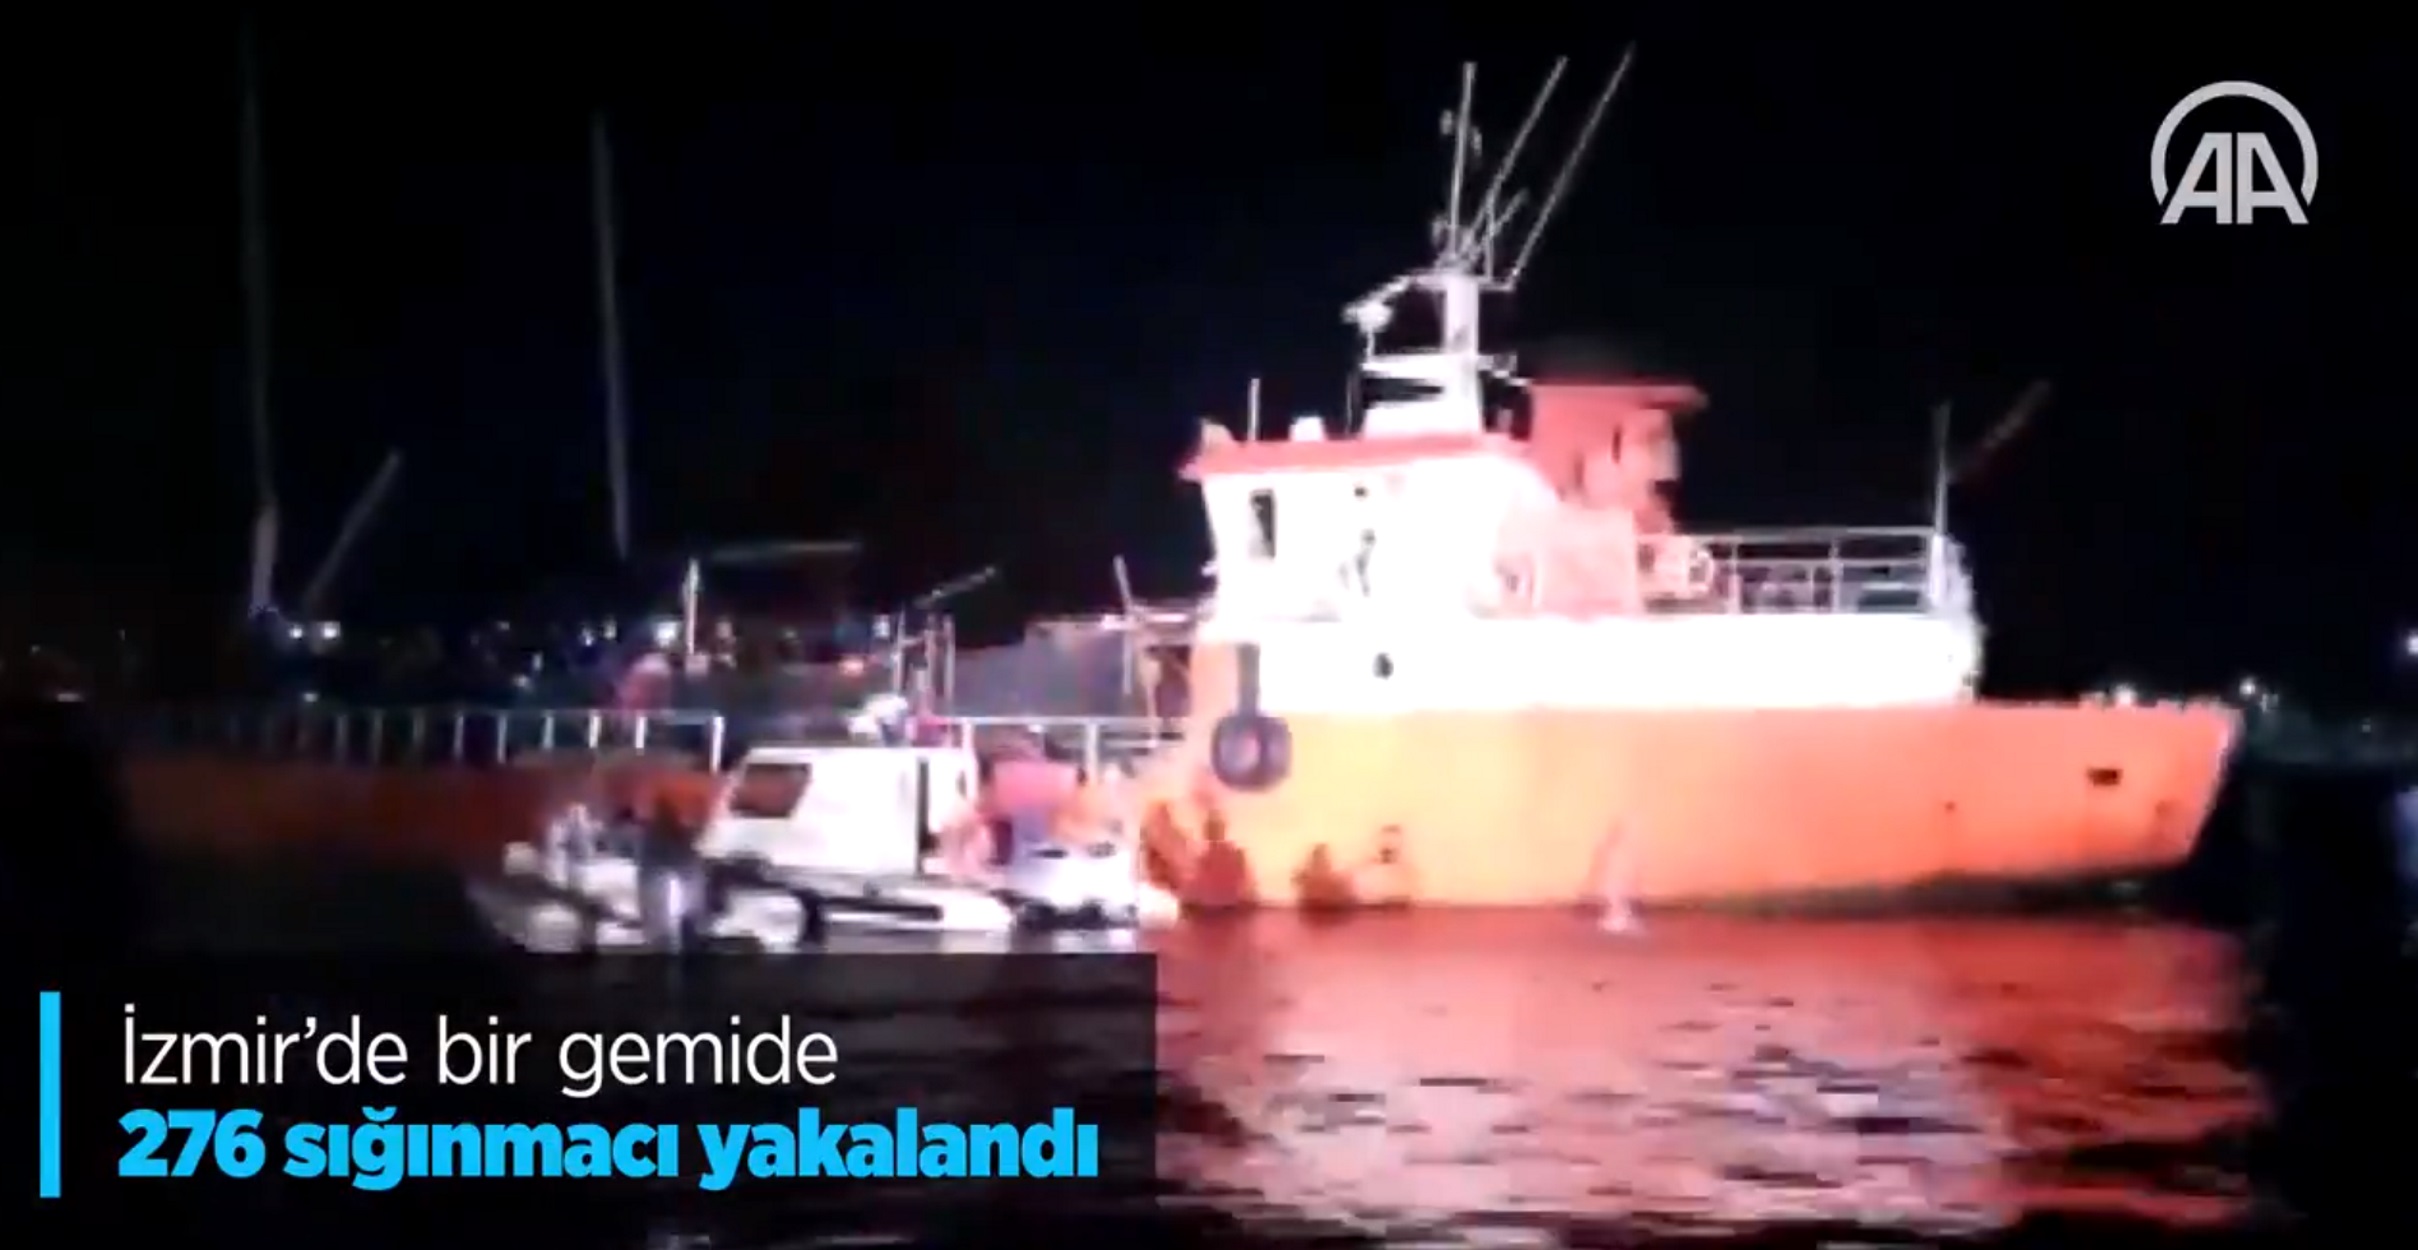 Τουρκία – απίστευτο! Σταμάτησαν πλοίο με εκατοντάδες μετανάστες για την Ελλάδα (pic, video)